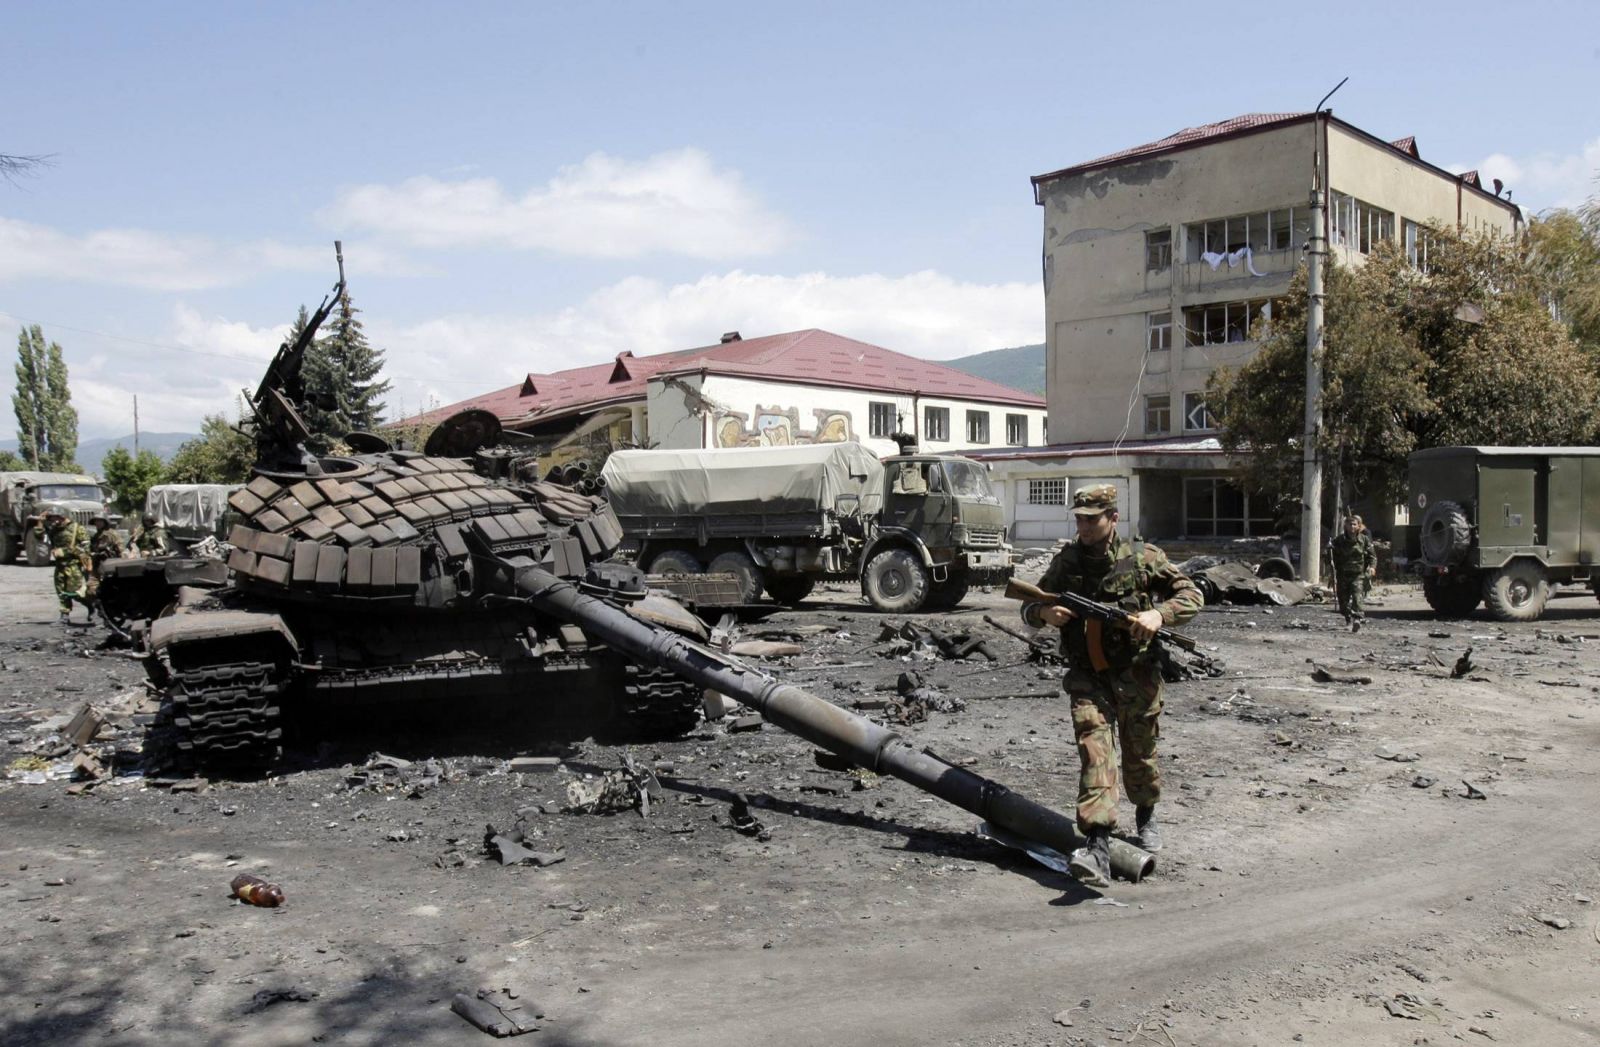 Một người lính Nga đi ngang qua những chiếc xe tăng bị phá hủy của Gruzia ở thủ đô Tshinvali của Nam Ossetia, vào tháng 8 năm 2008.